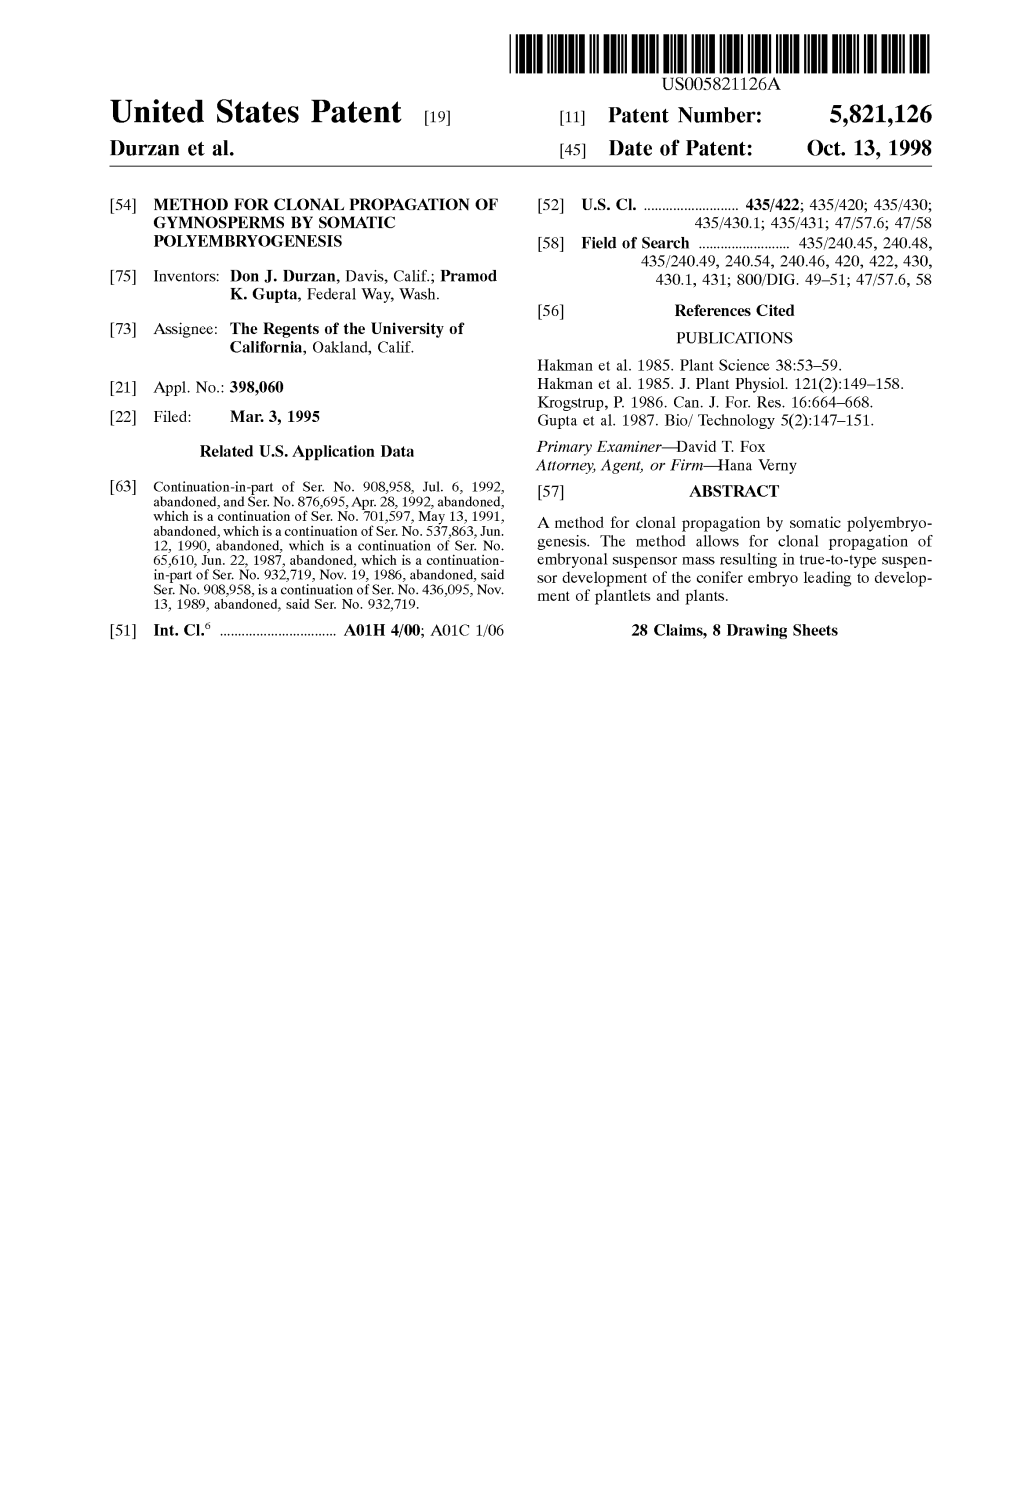 United States Patent 19 11 Patent Number: 5,821,126 Durzan Et Al